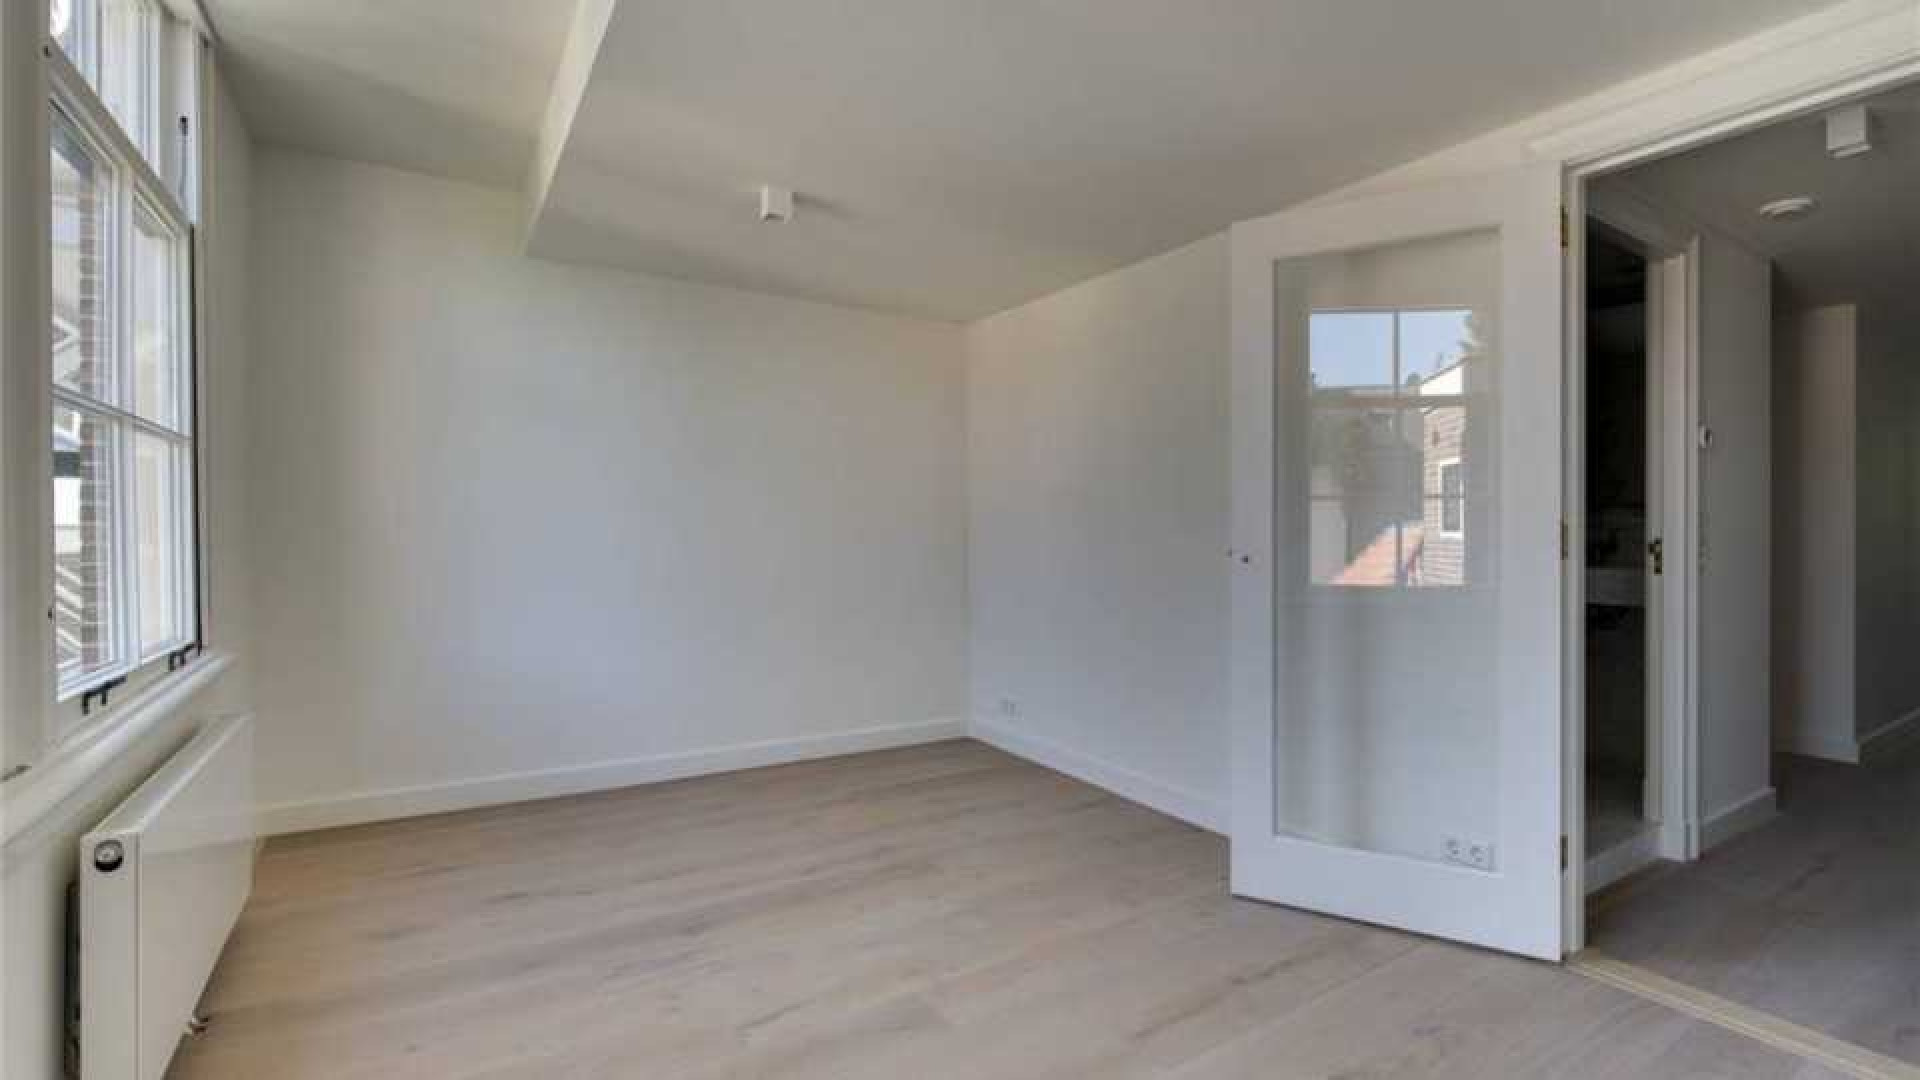 Marvin Breukhoven huurt luxe appartement aan Amsterdamse gracht. Zie foto's